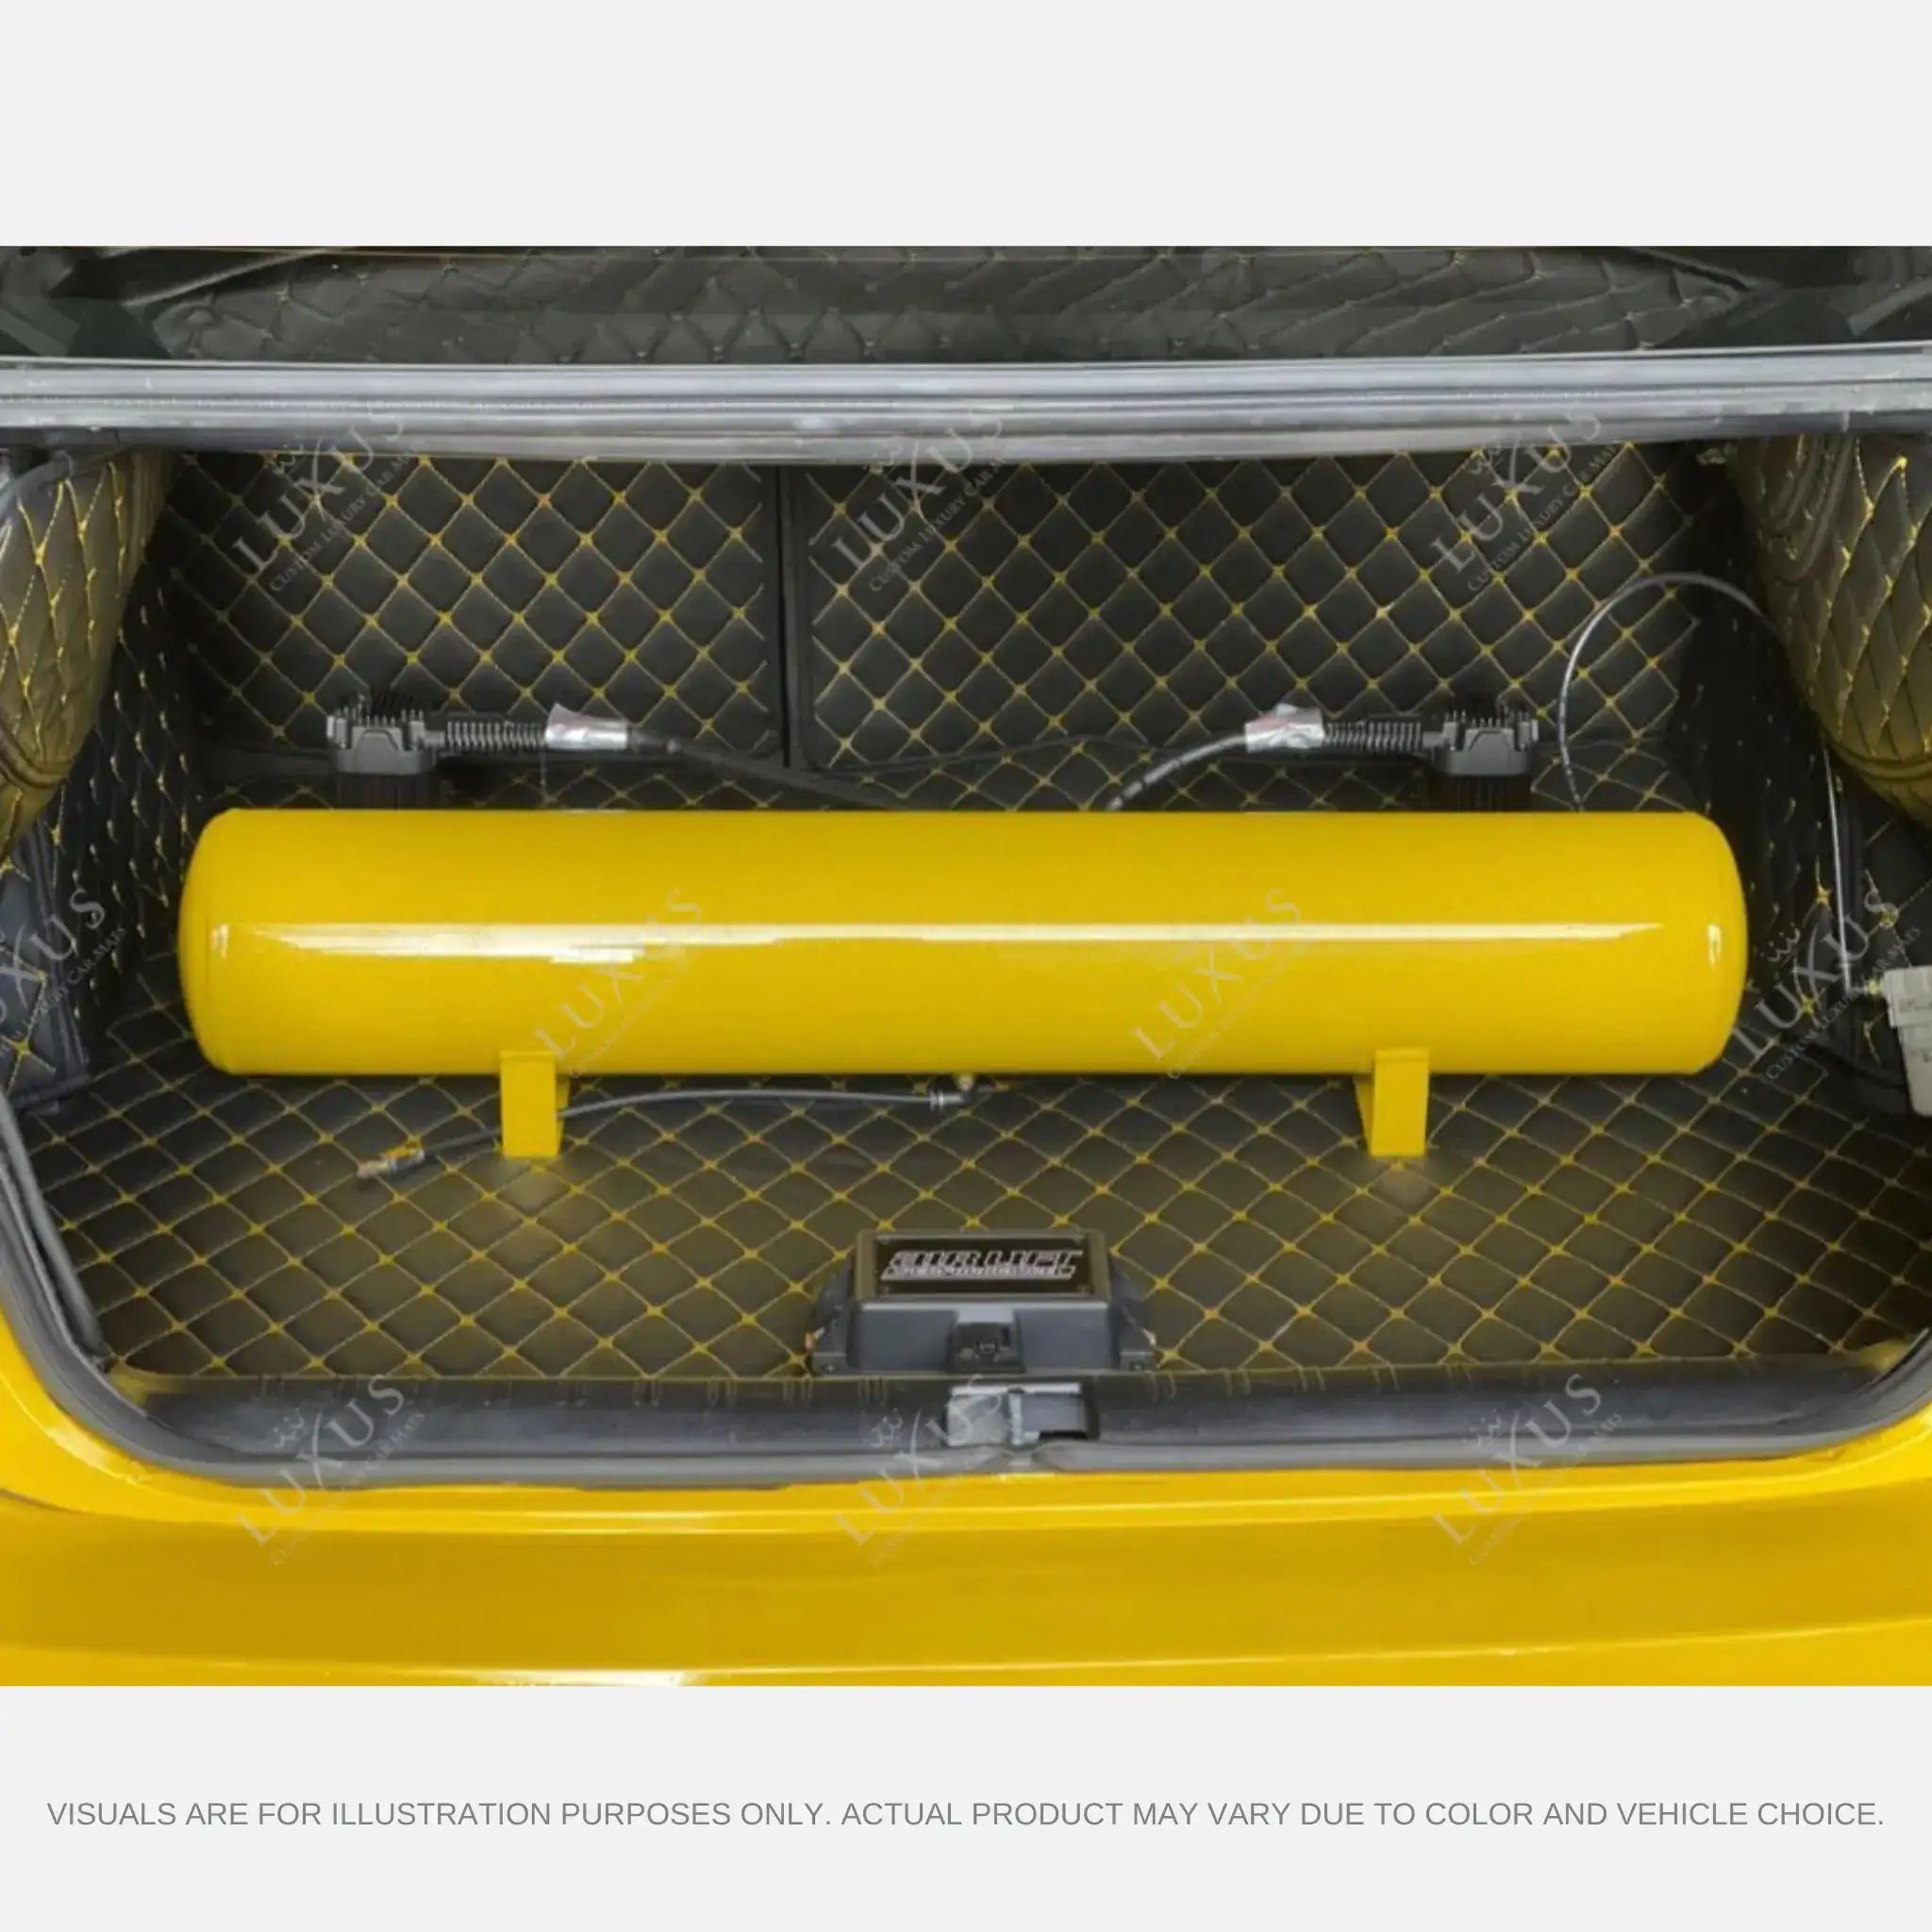 Luxus Car Mats™ - Tapete para maletero/maletero de cuero de lujo con costuras en 3D en negro y naranja